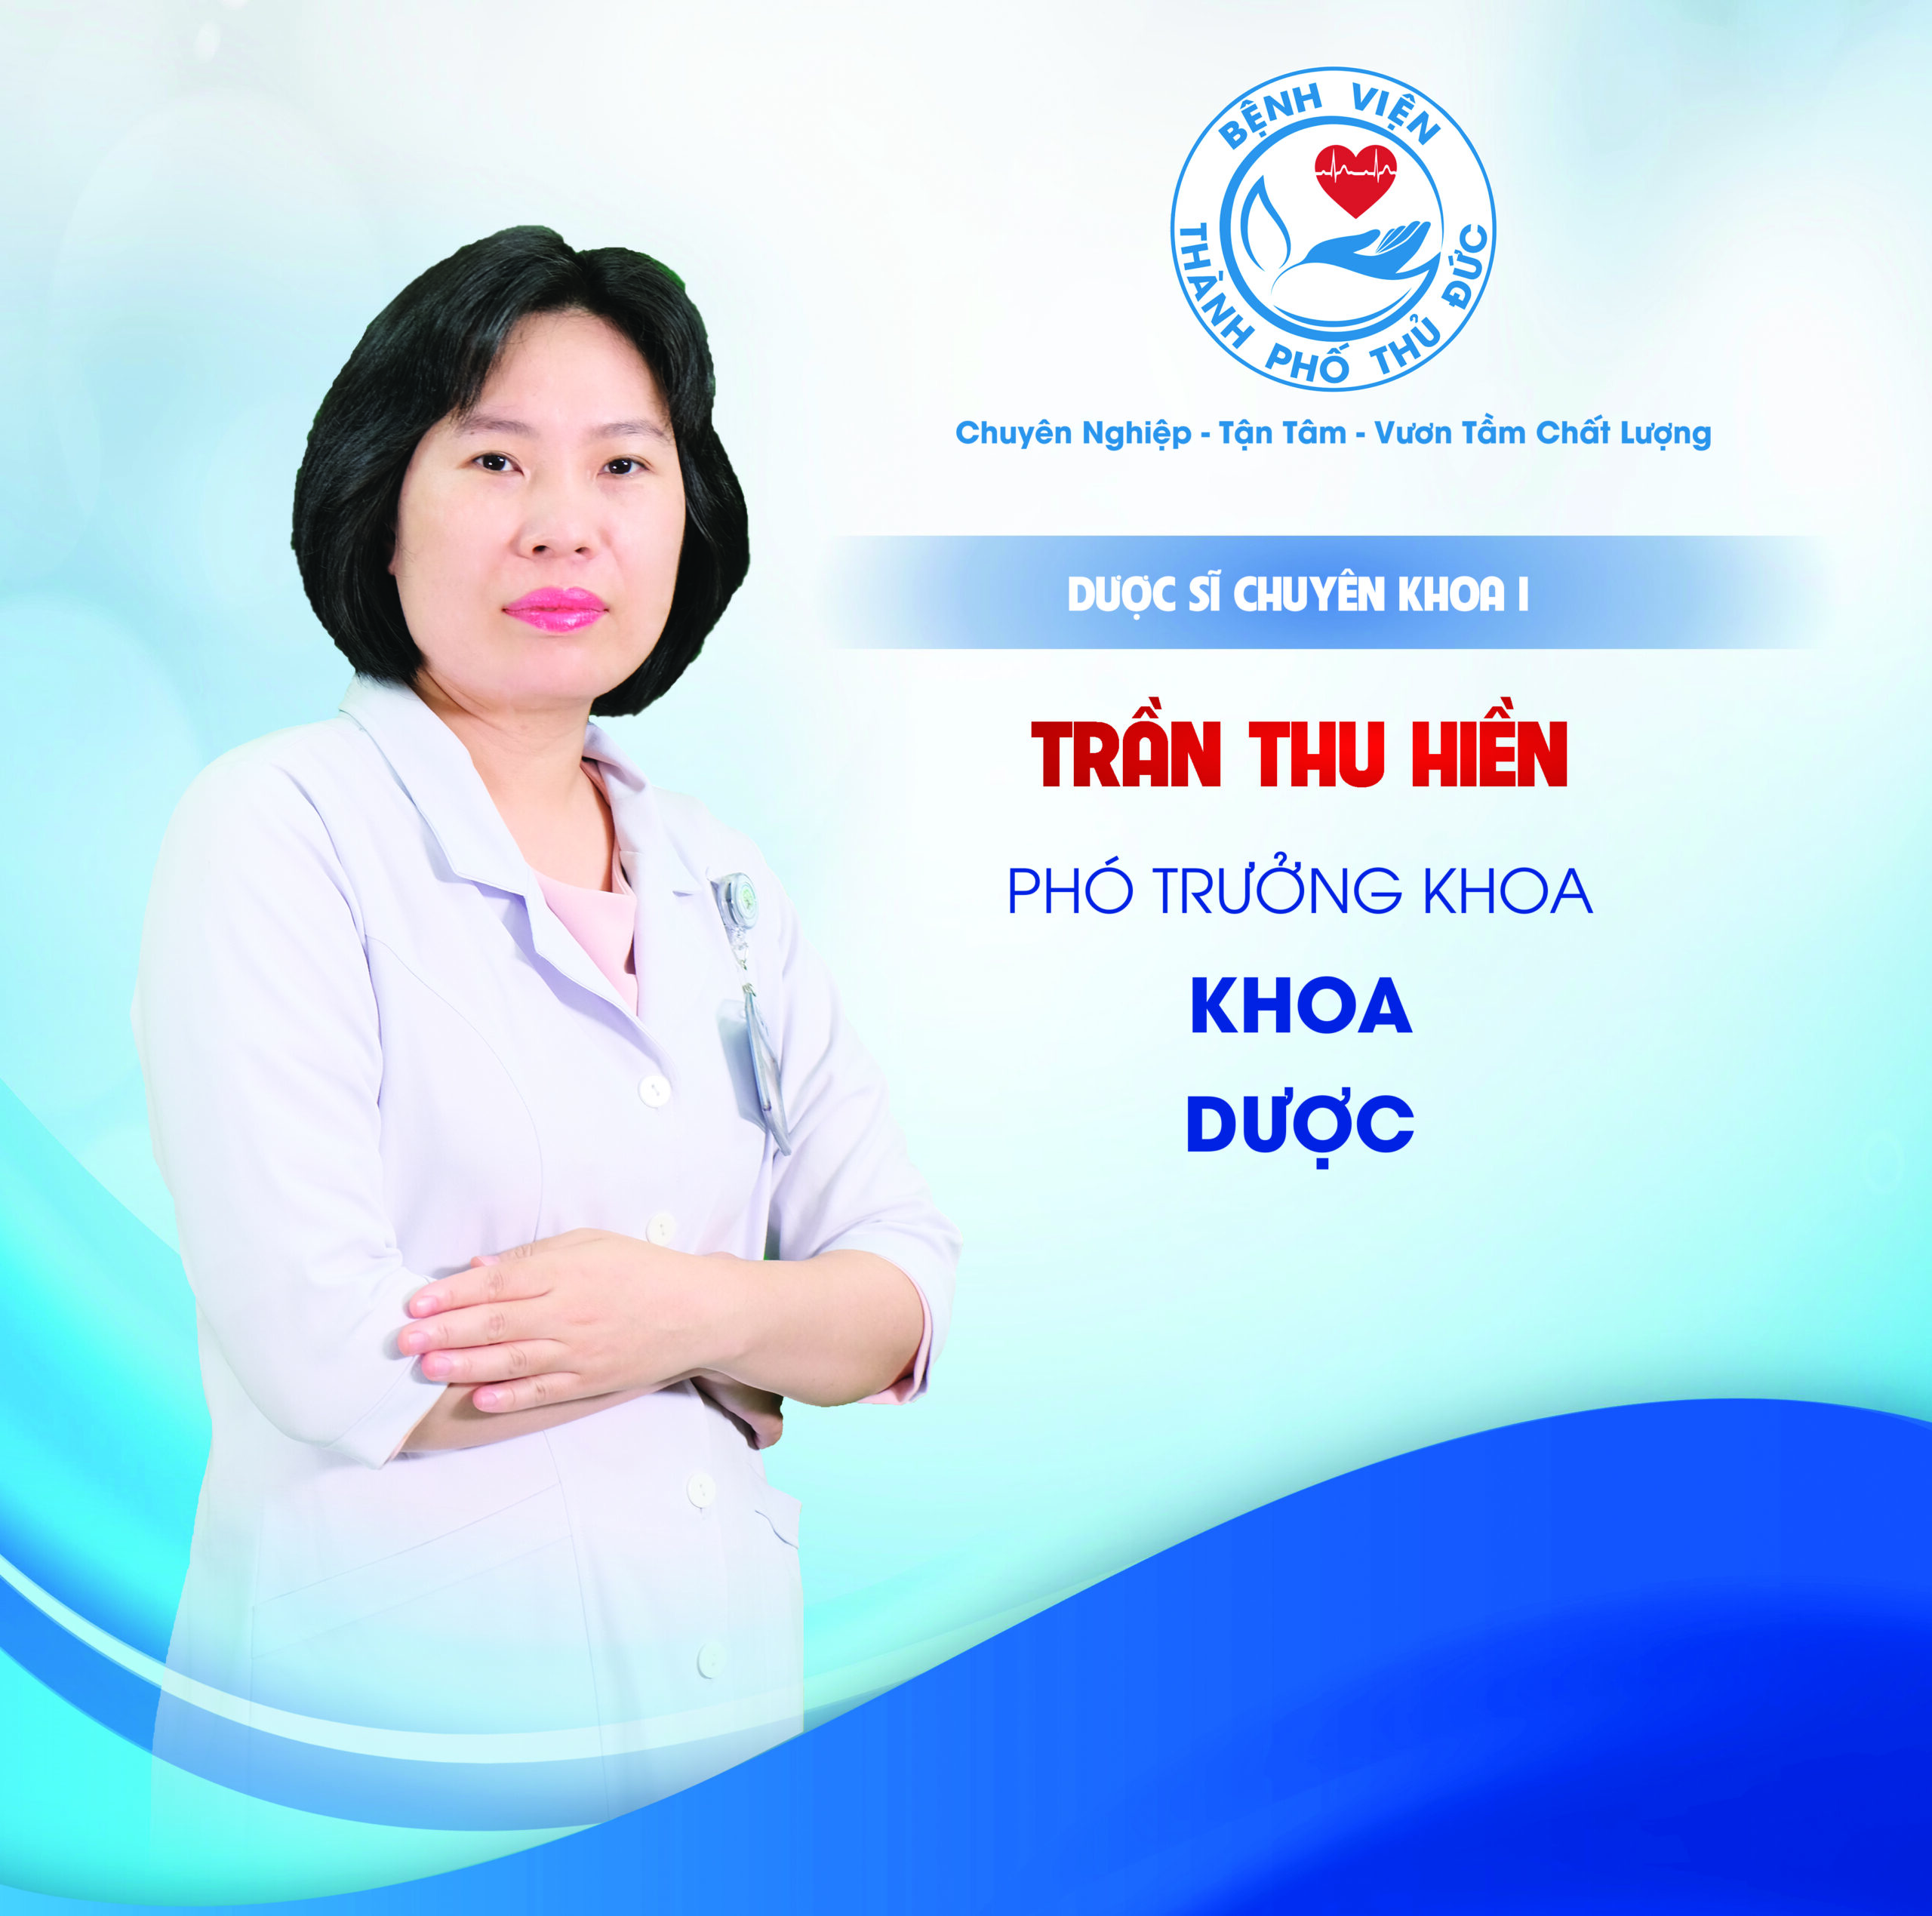 DSCKI. Trần Thu Hiền - Phó Trưởng khoa Dược